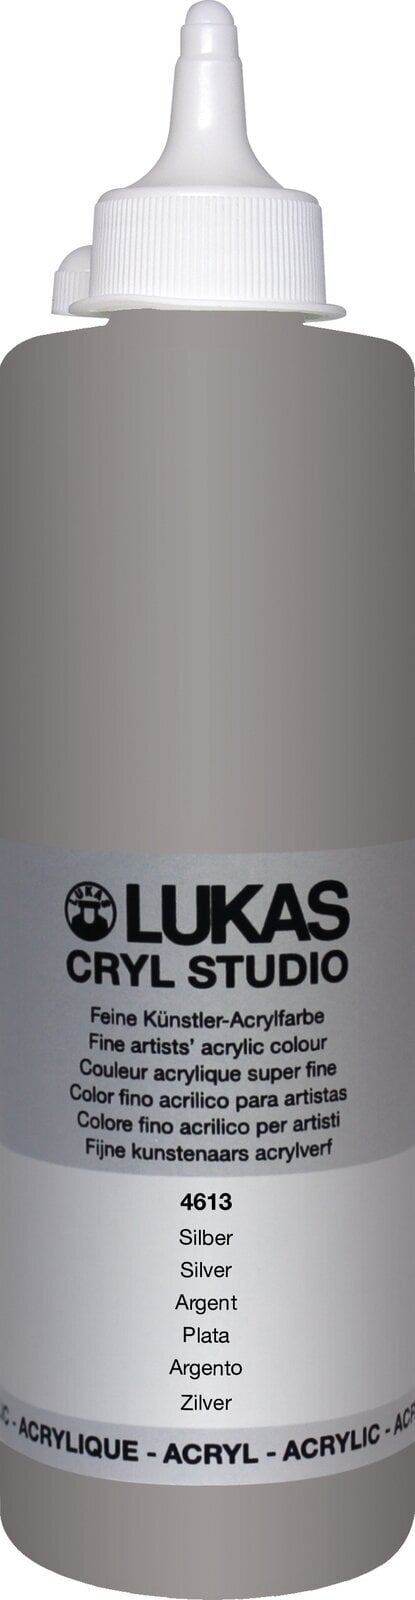 Peinture acrylique Lukas Cryl Studio Peinture acrylique 500 ml Argent